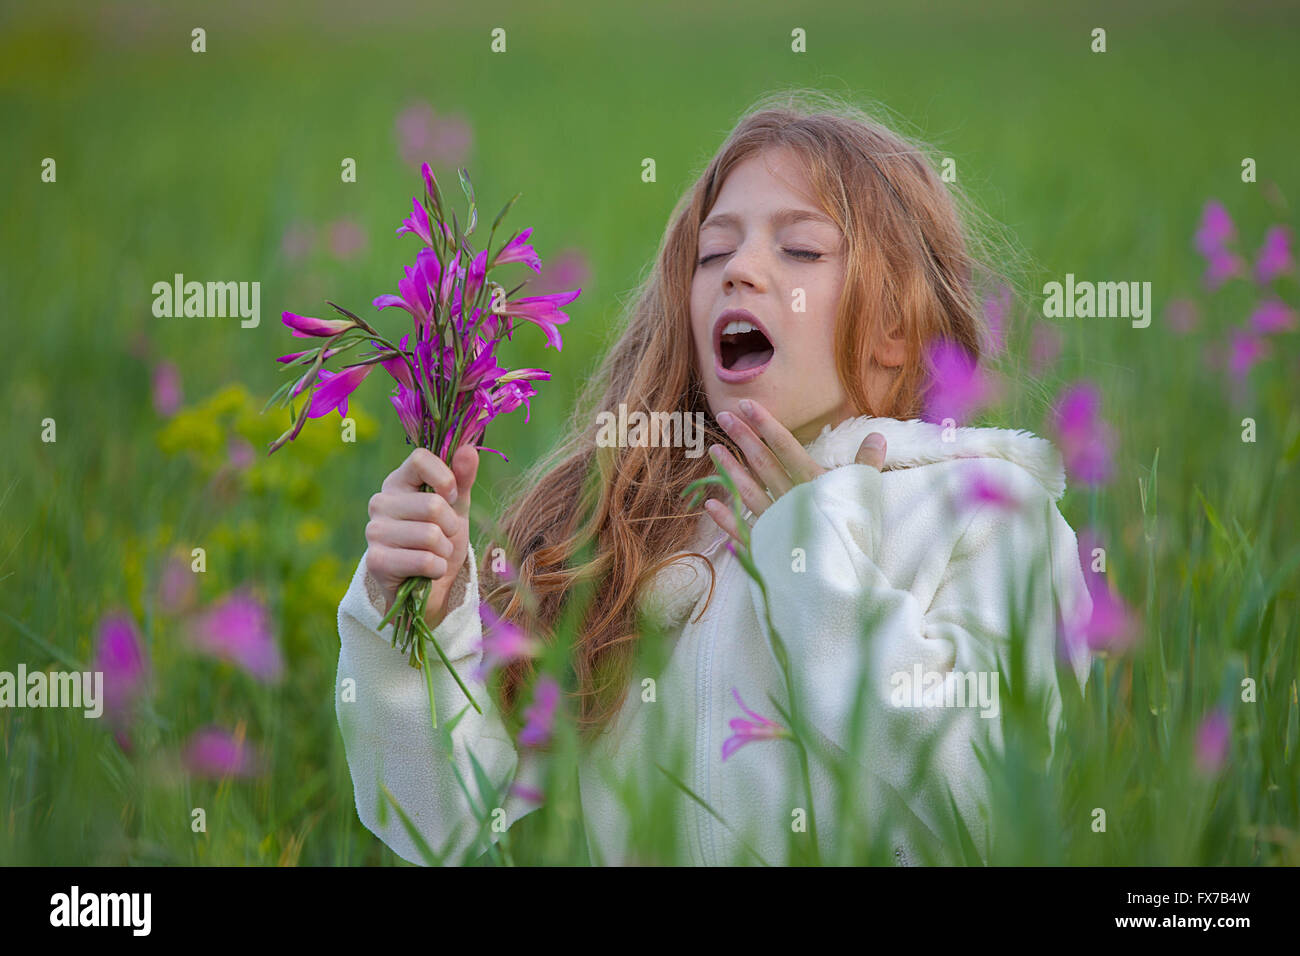 child sneezing allergic to flower pollen in summer Stock Photo